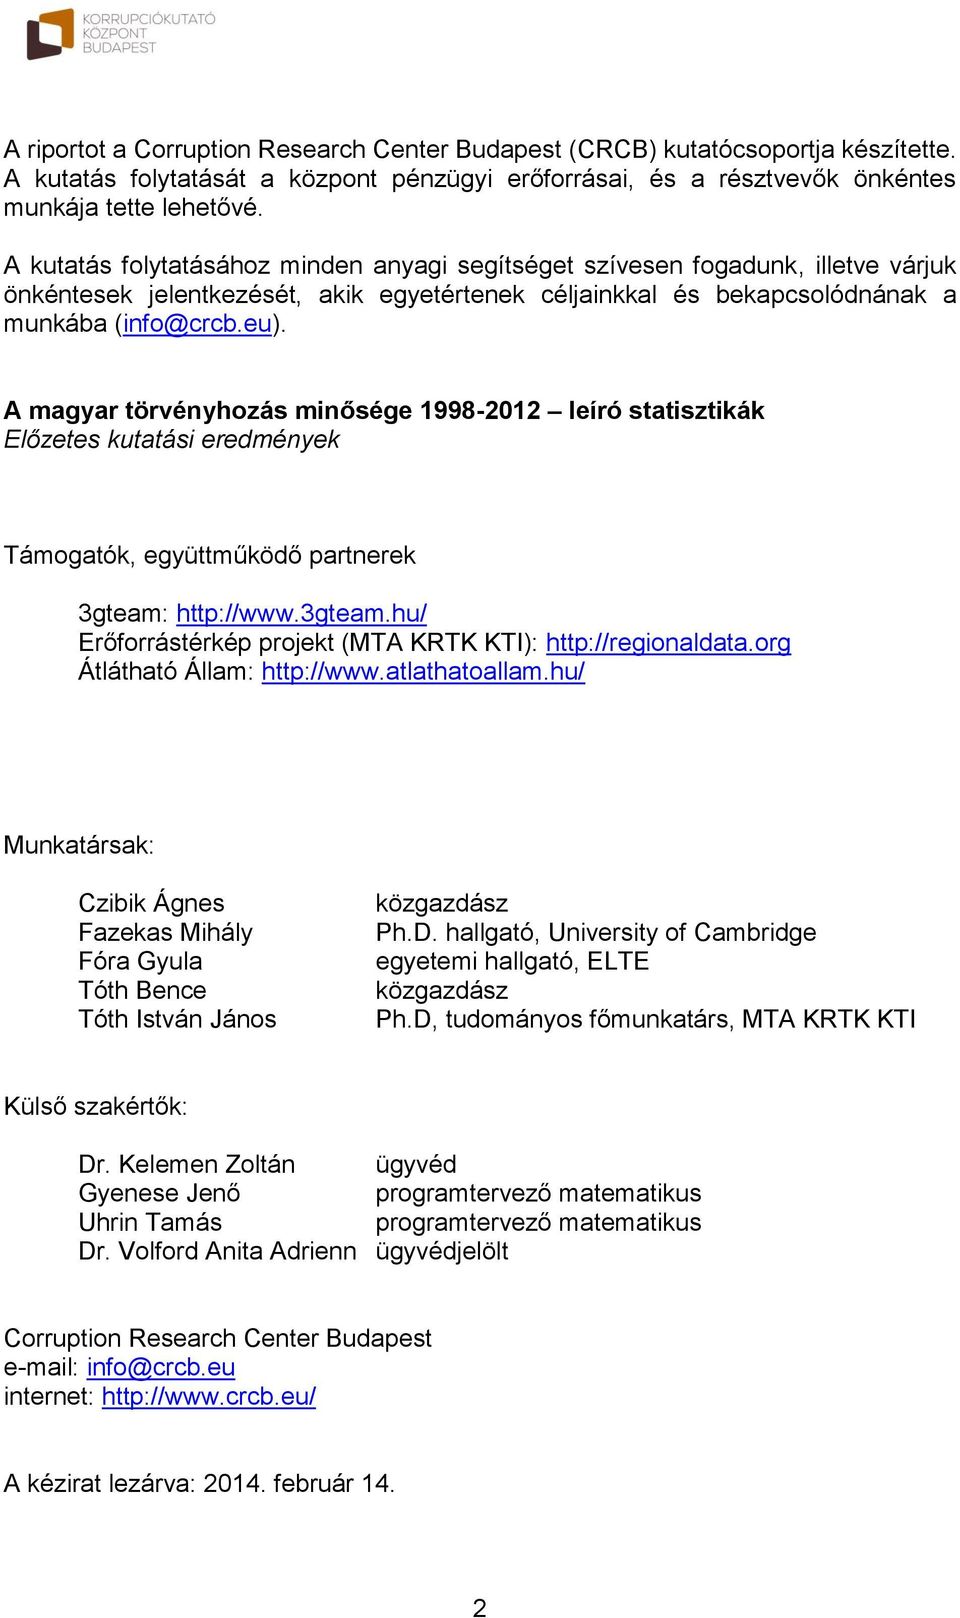 A magyar törvényhozás minősége 1998-2012 leíró statisztikák Előzetes kutatási eredmények Támogatók, együttműködő partnerek 3gteam: http://www.3gteam.hu/ Erőforrástérkép projekt (MTA KRTK KTI): http://regionaldata.